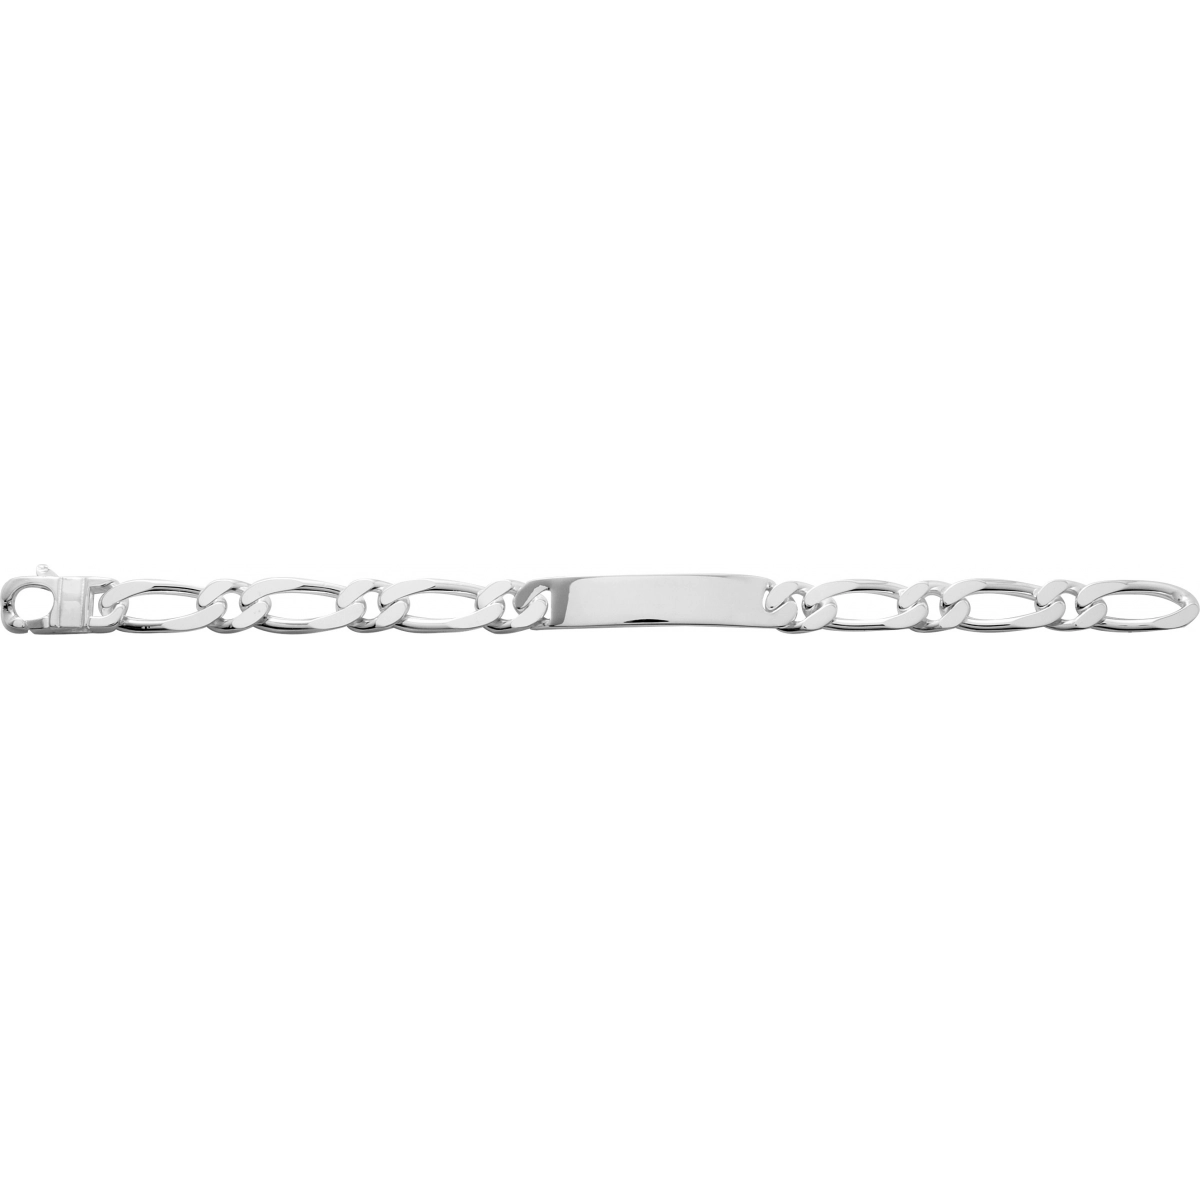 ID bracelet 10mm rh925 Silver - Size: 22  Lua Blanca  304020.00.22